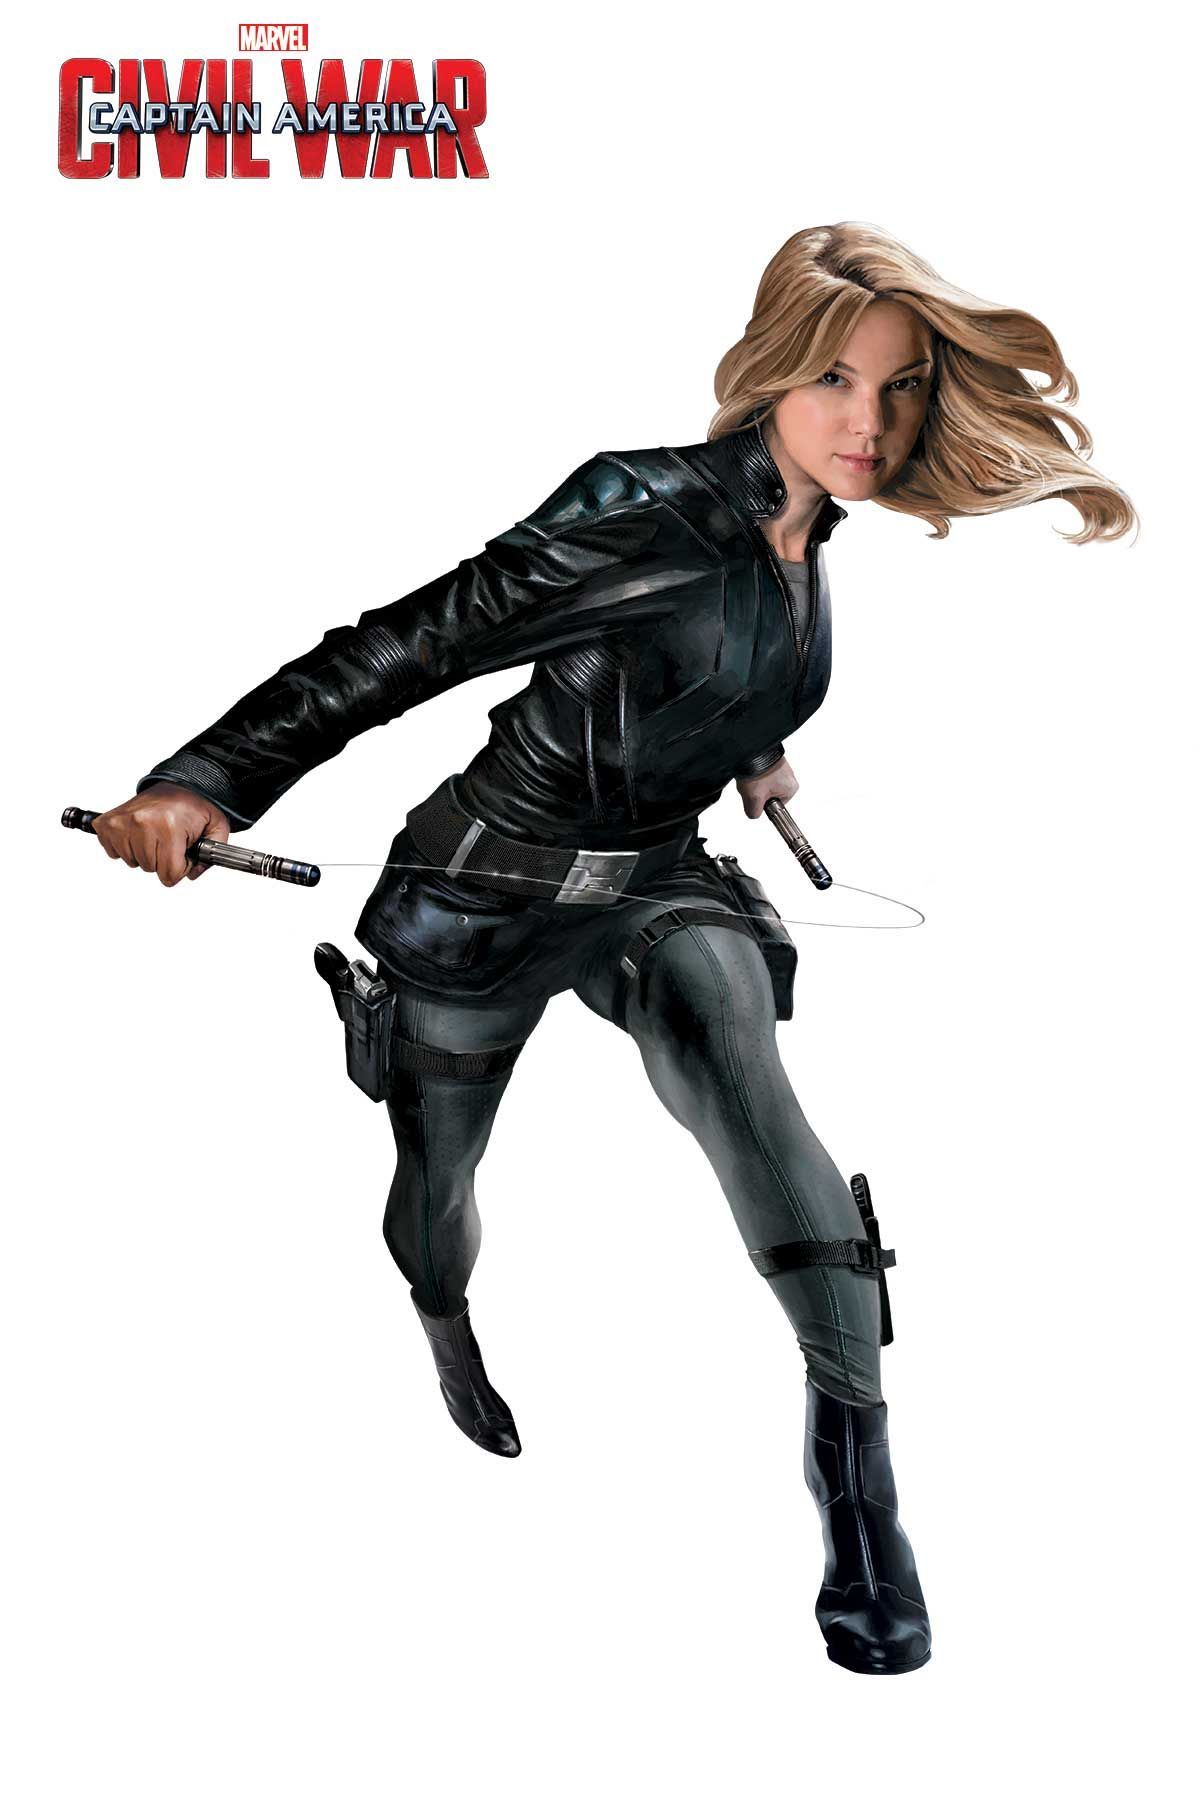 Agent 13 (Sharon Carter) Promo Art for Captain America Civil War